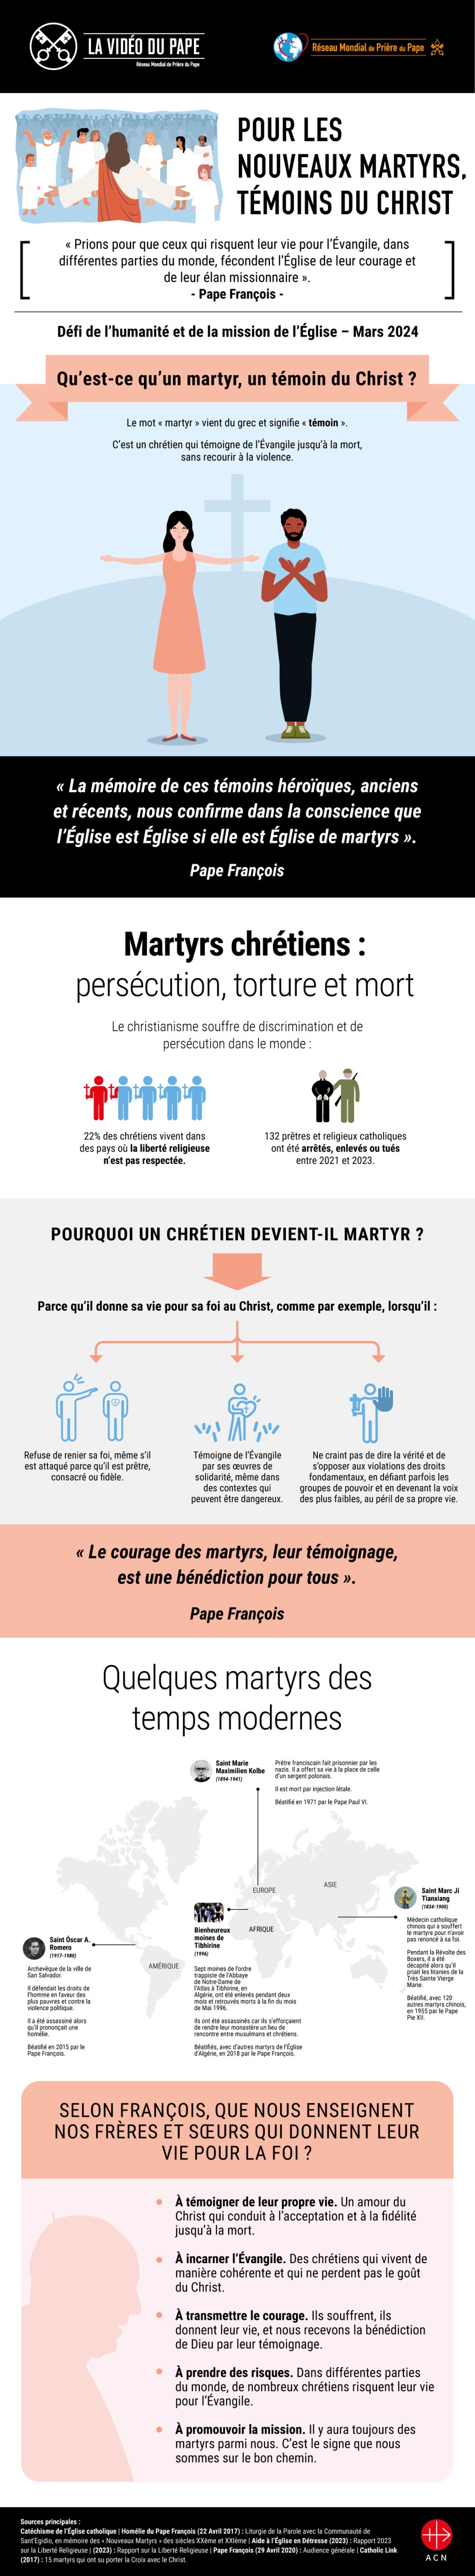 Infographic-TPV-3-2024-FR-Pour-les-nouveaux-martyrs-temoins-du-Christ.jpg